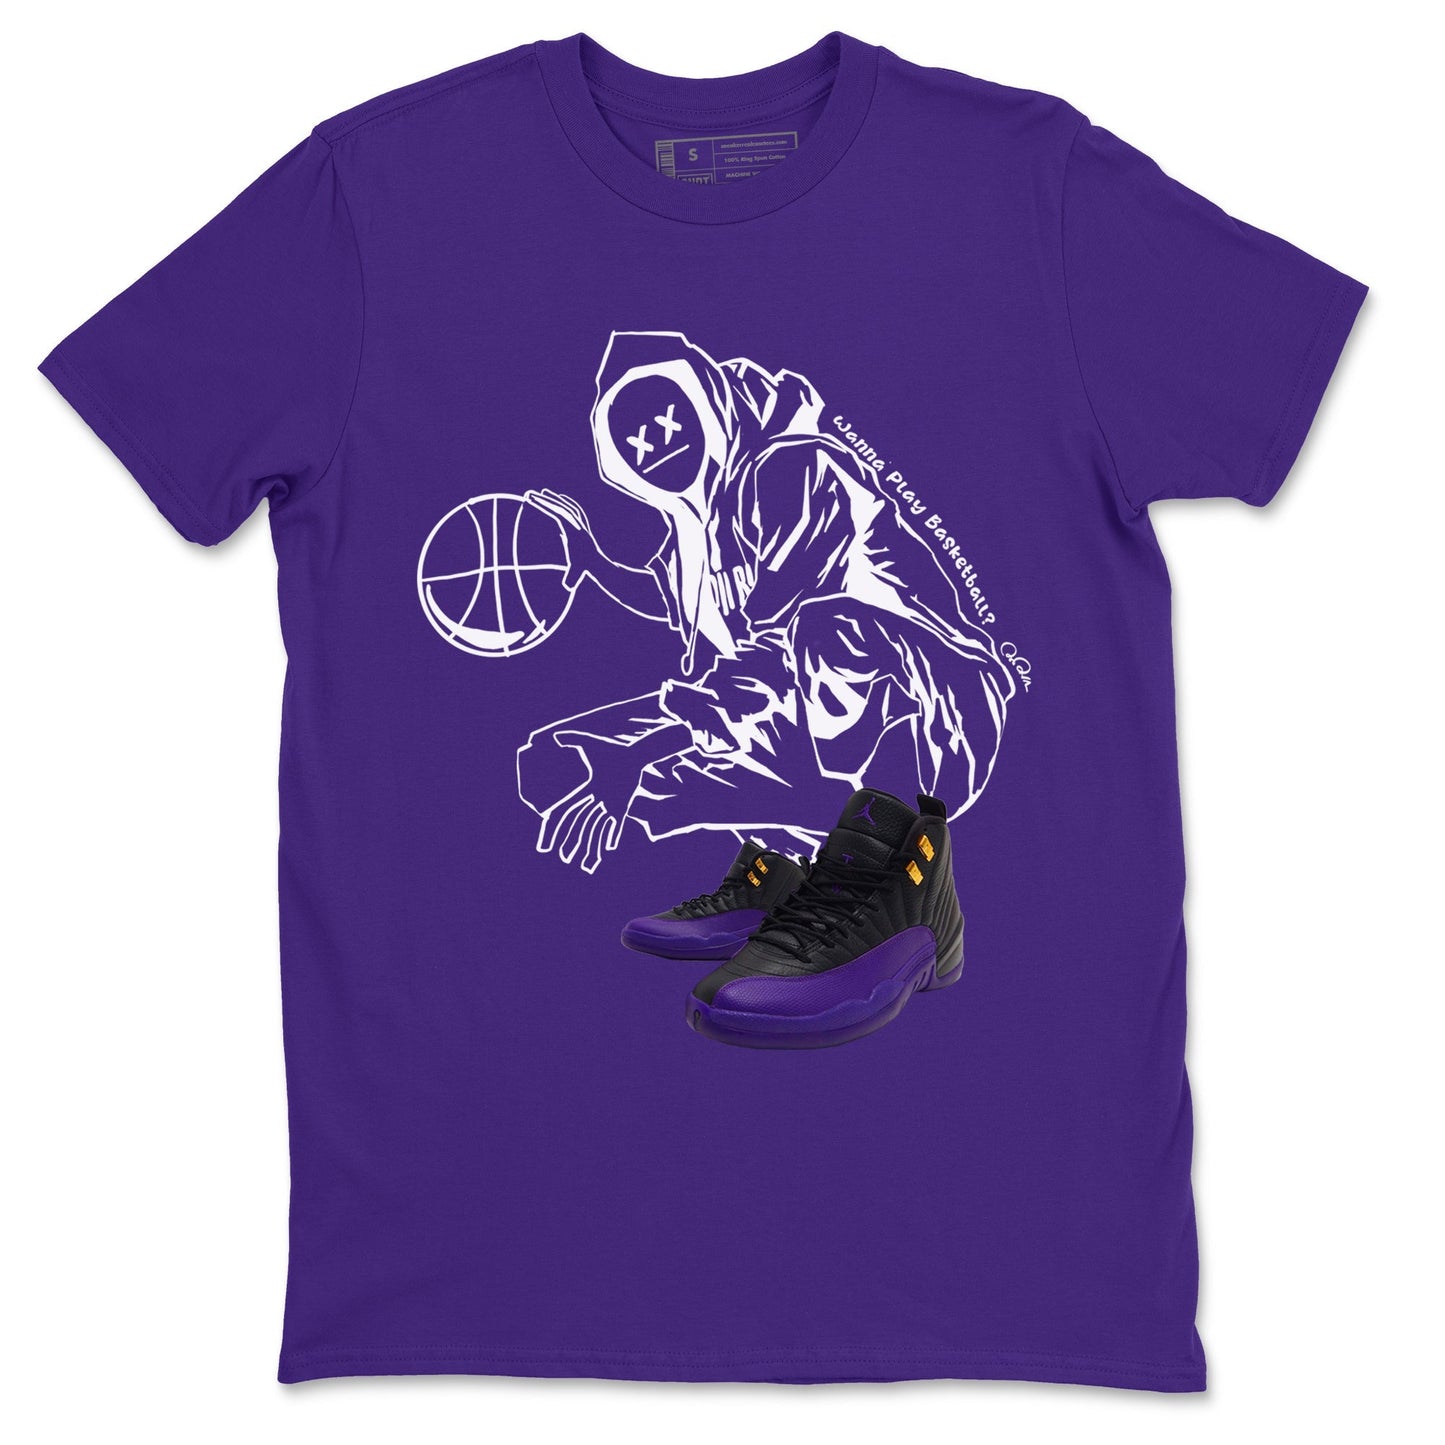 Air Jordan 12 Field Purple shirt to match jordans Wanna Play Basketball Streetwear Sneaker Shirt AJ12 Field Purple Drip Gear Zone Sneaker Matching Clothing Unisex Purple 2 T-Shirt